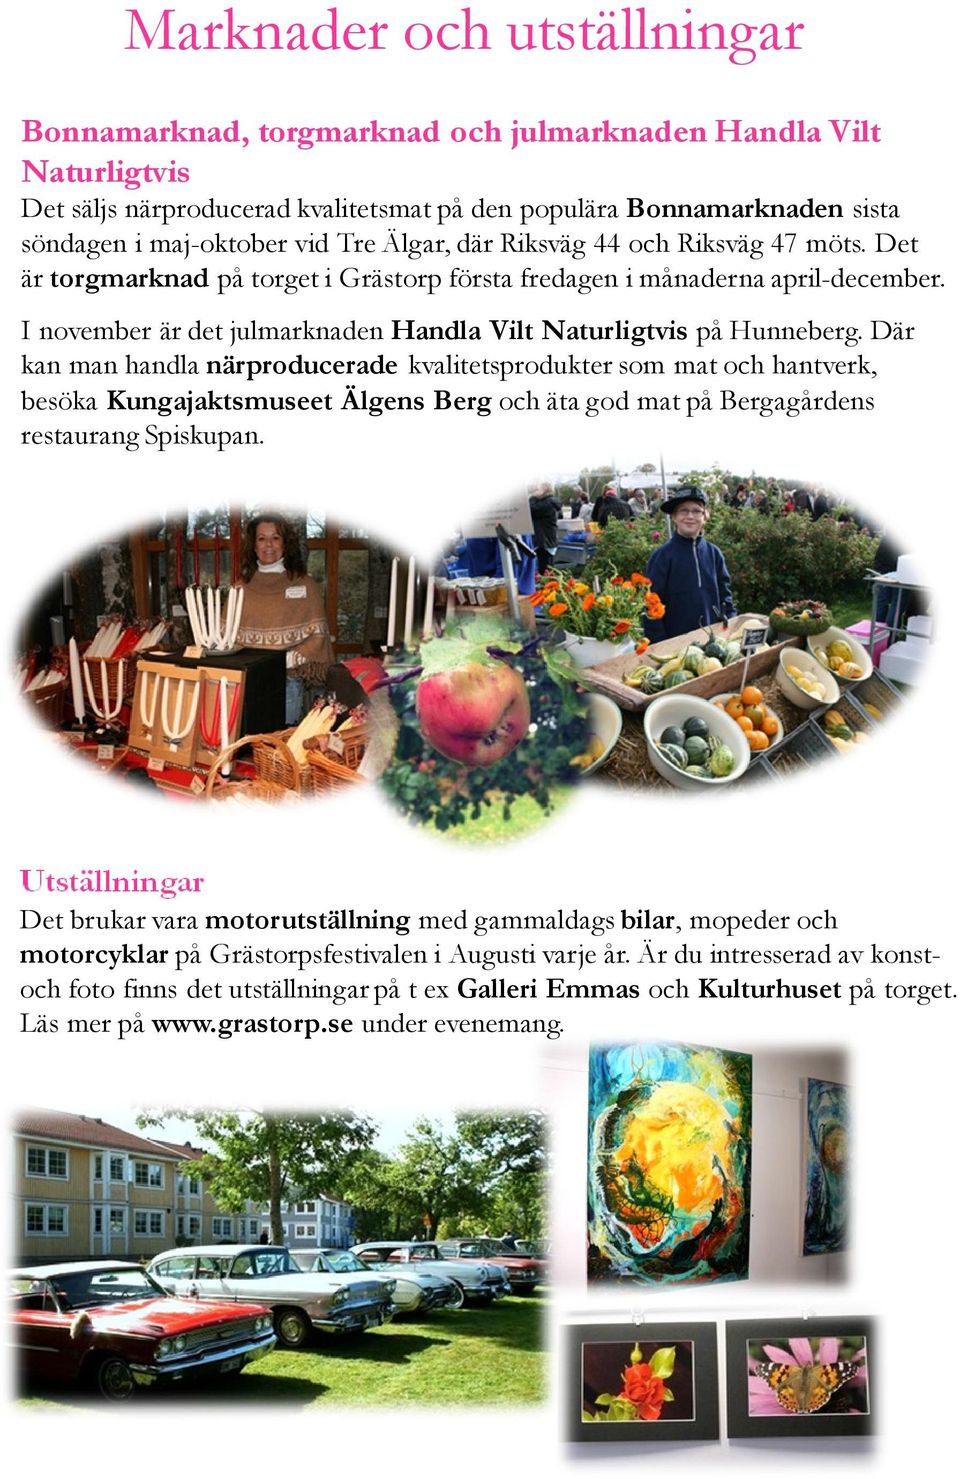 Där kan man handla närproducerade kvalitetsprodukter som mat och hantverk, besöka Kungajaktsmuseet Älgens Berg och äta god mat på Bergagårdens restaurang Spiskupan.